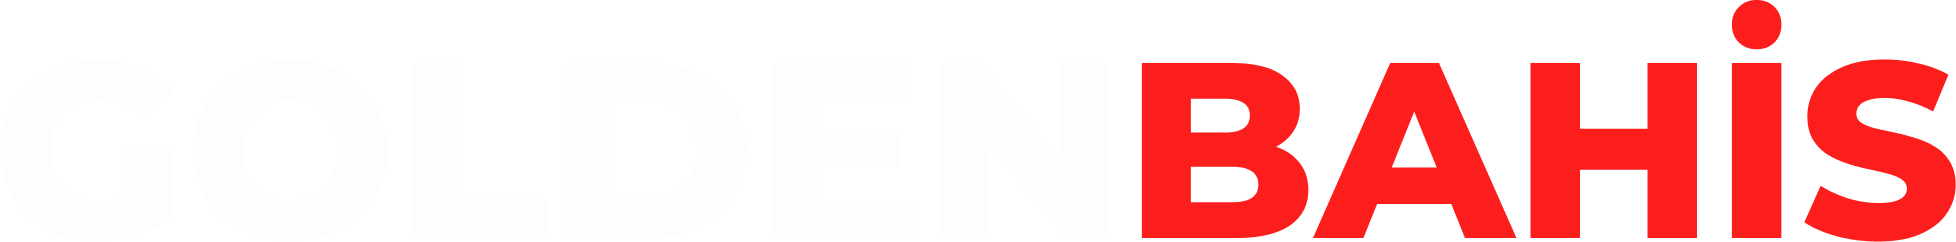 GOLDENBET Logo